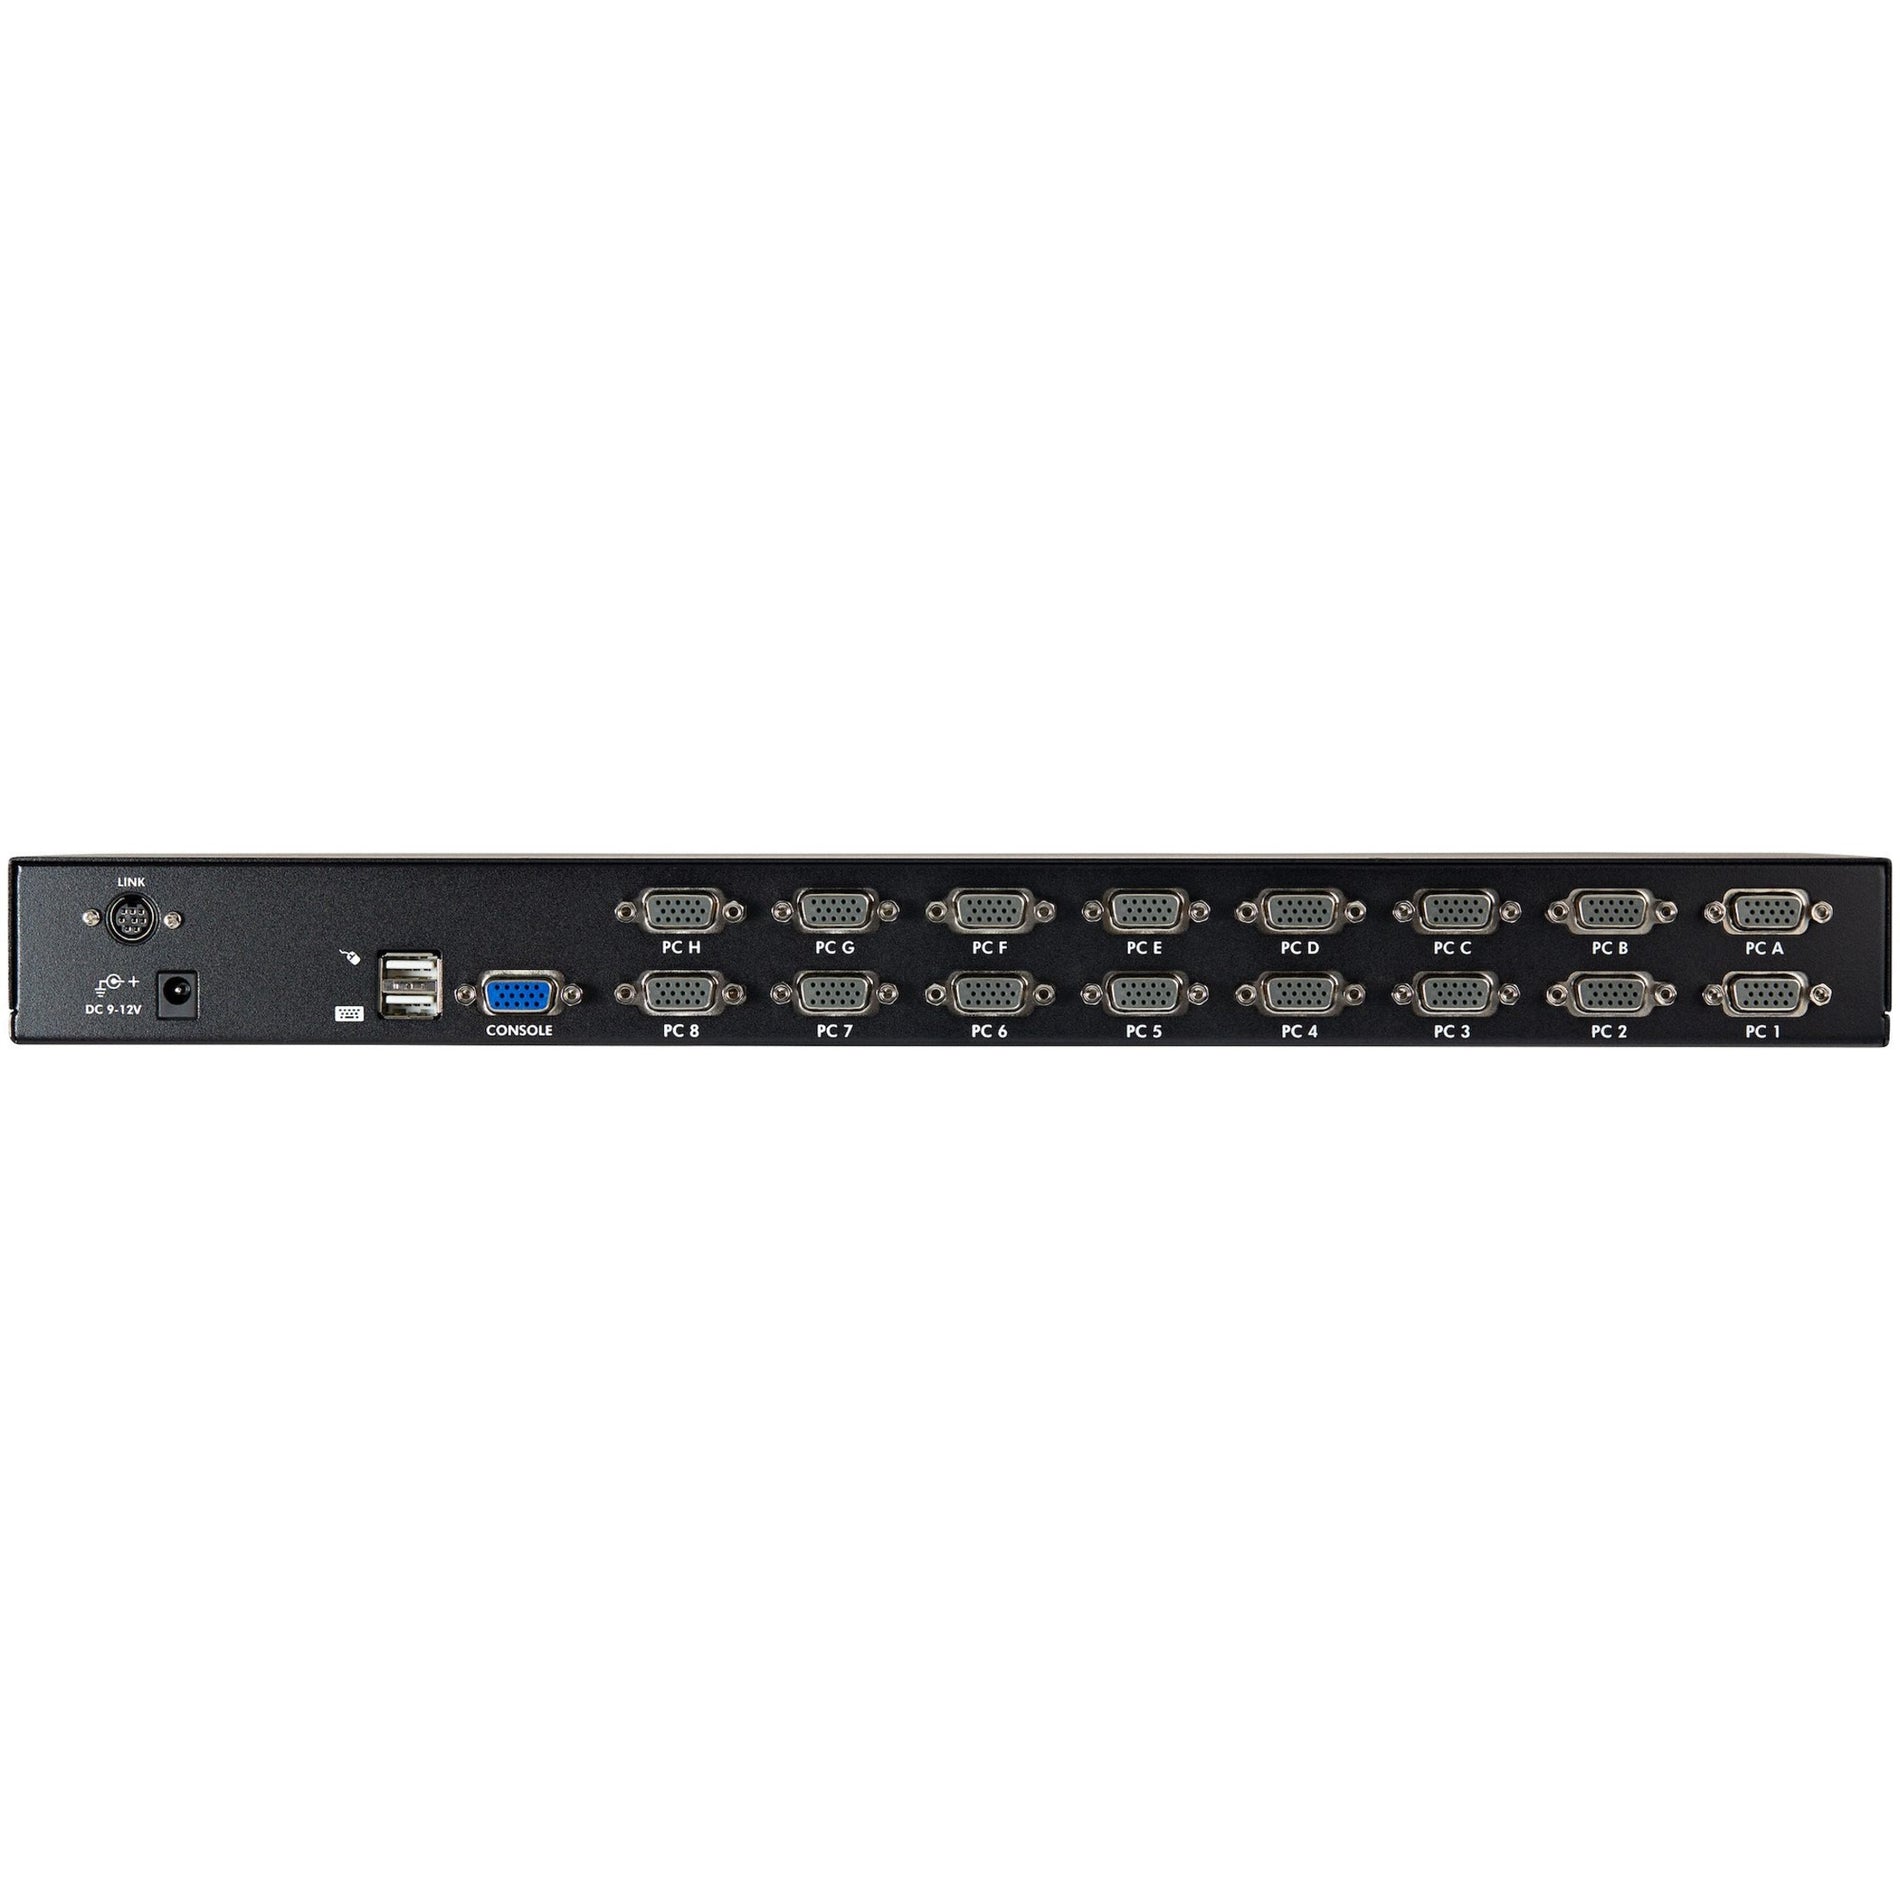 星美科技 SV1631DUSBUK 16端口1U机架式USB KVM切换器套件w / OSD和电缆，1920 x 1440分辨率，3年保修